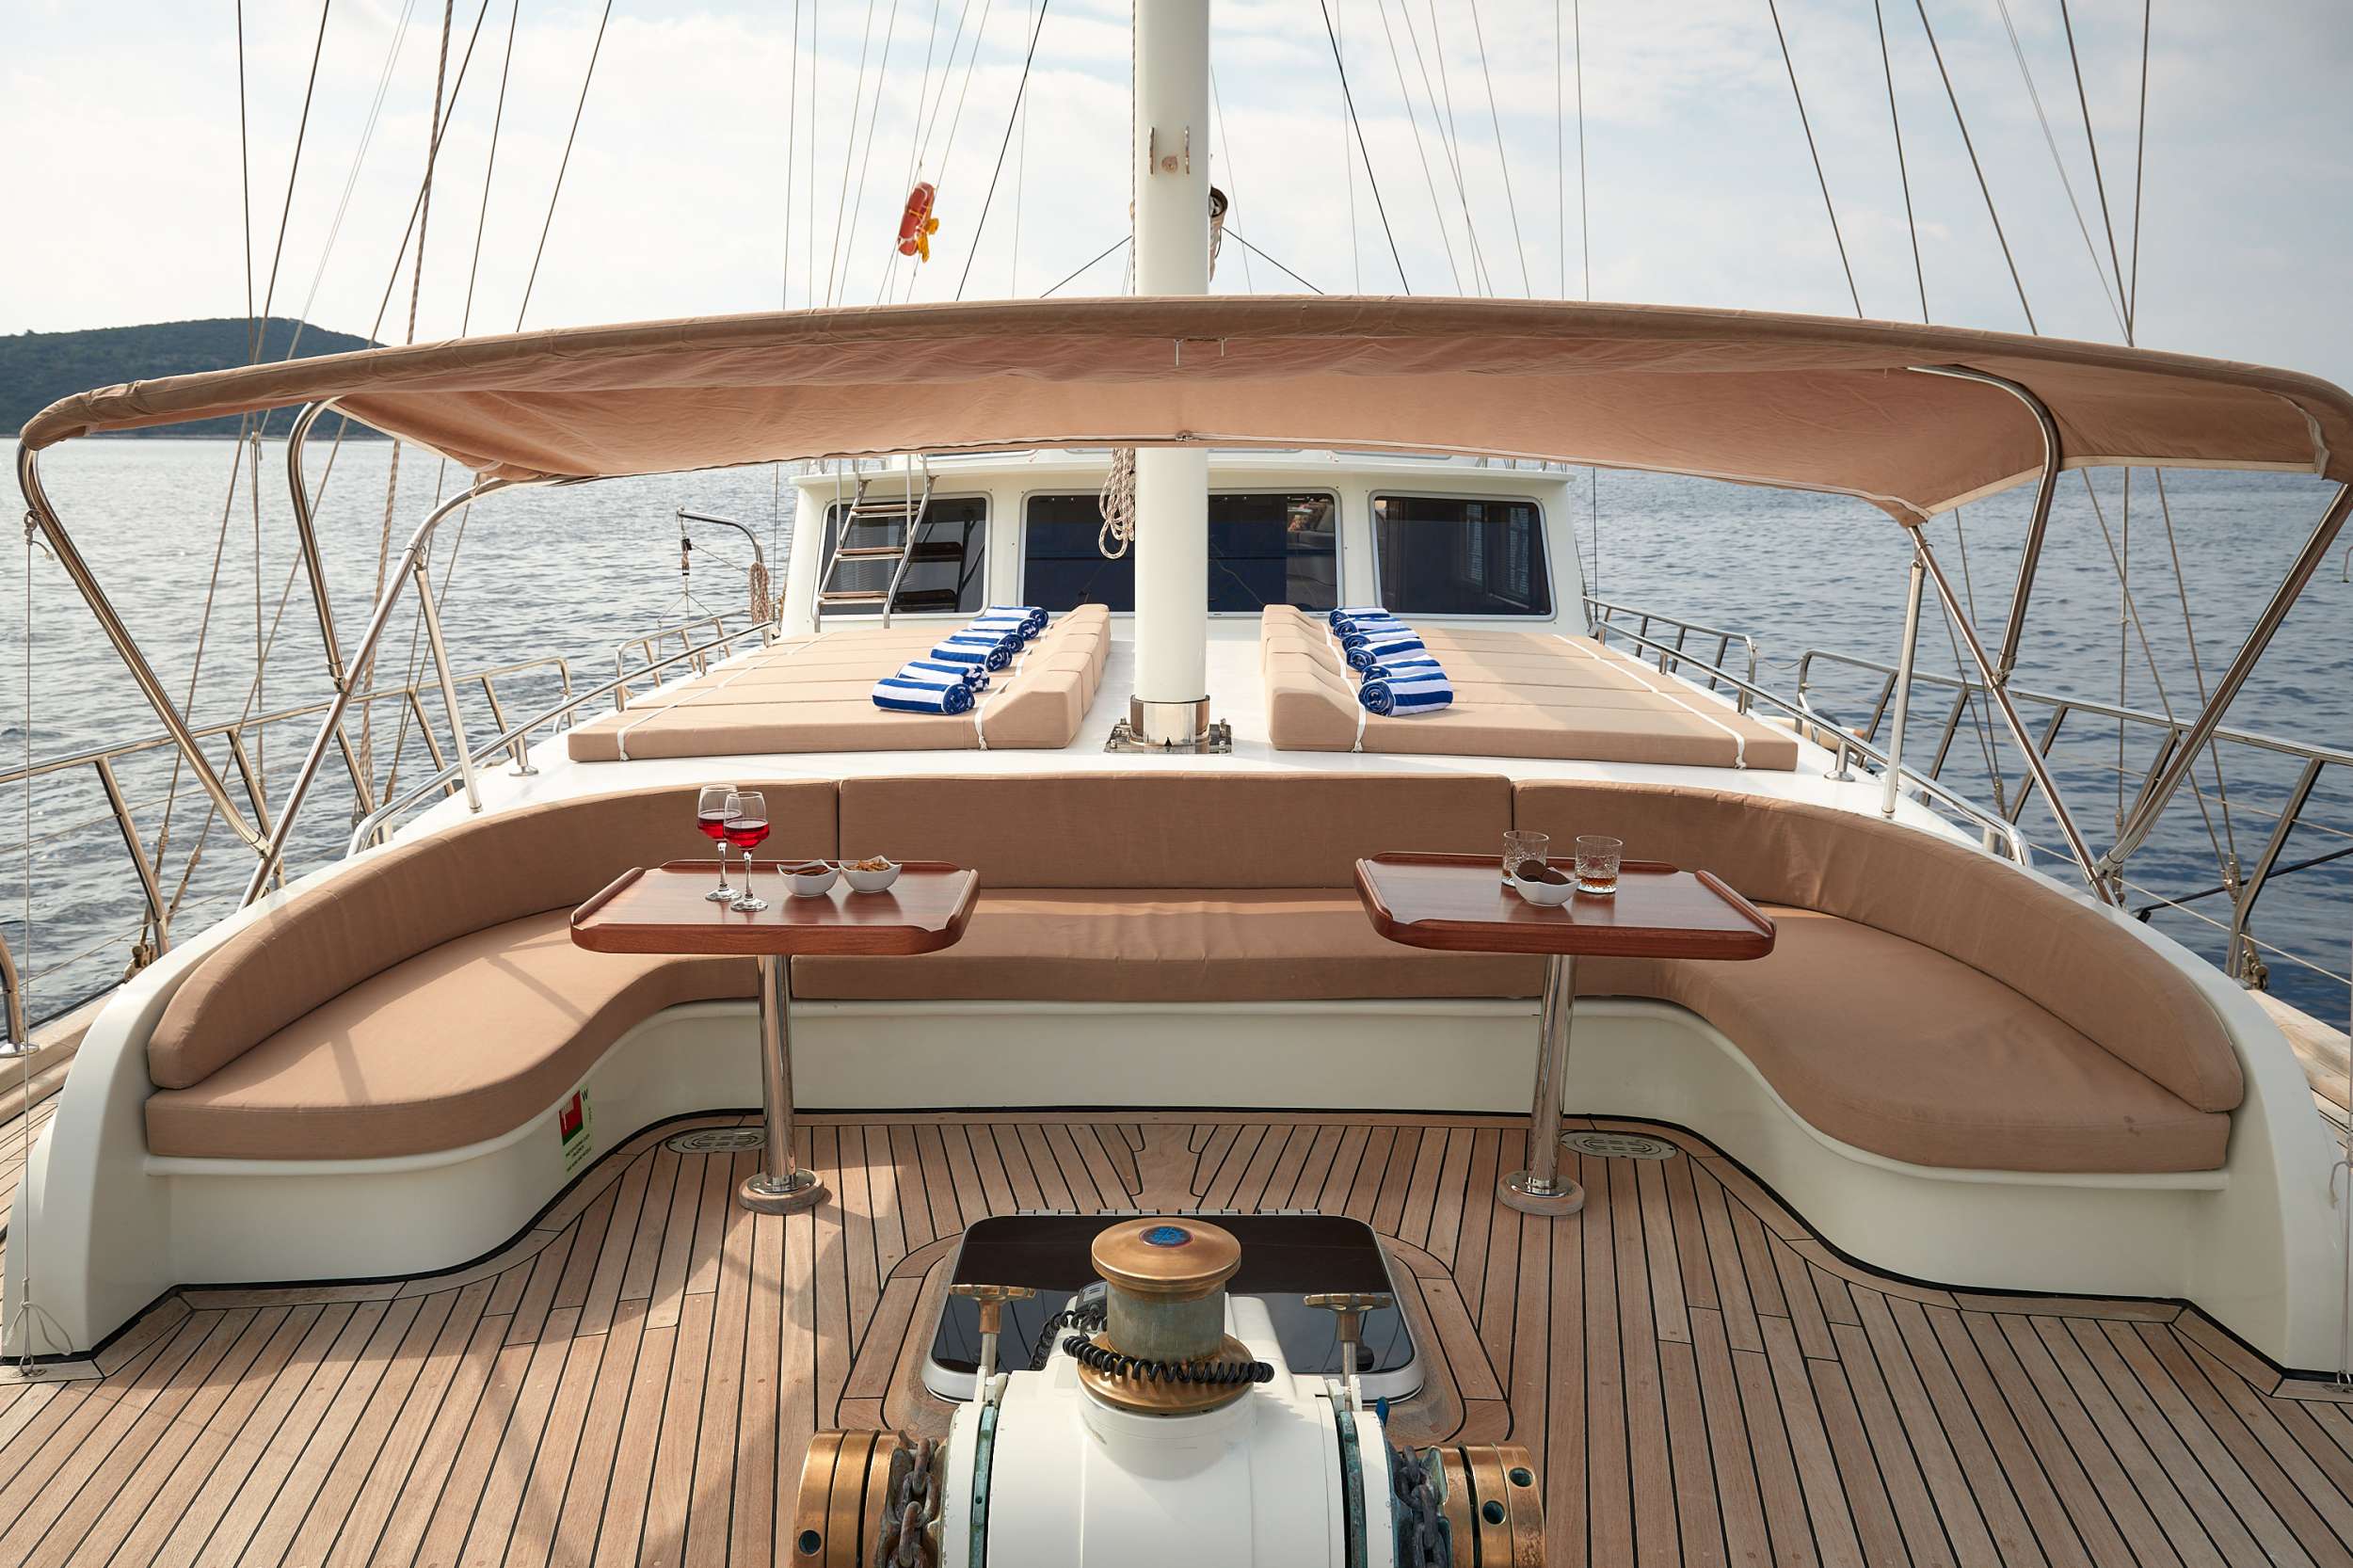 SEA BREEZE - Yacht Charter Brbinj & Boat hire in Croatia 5